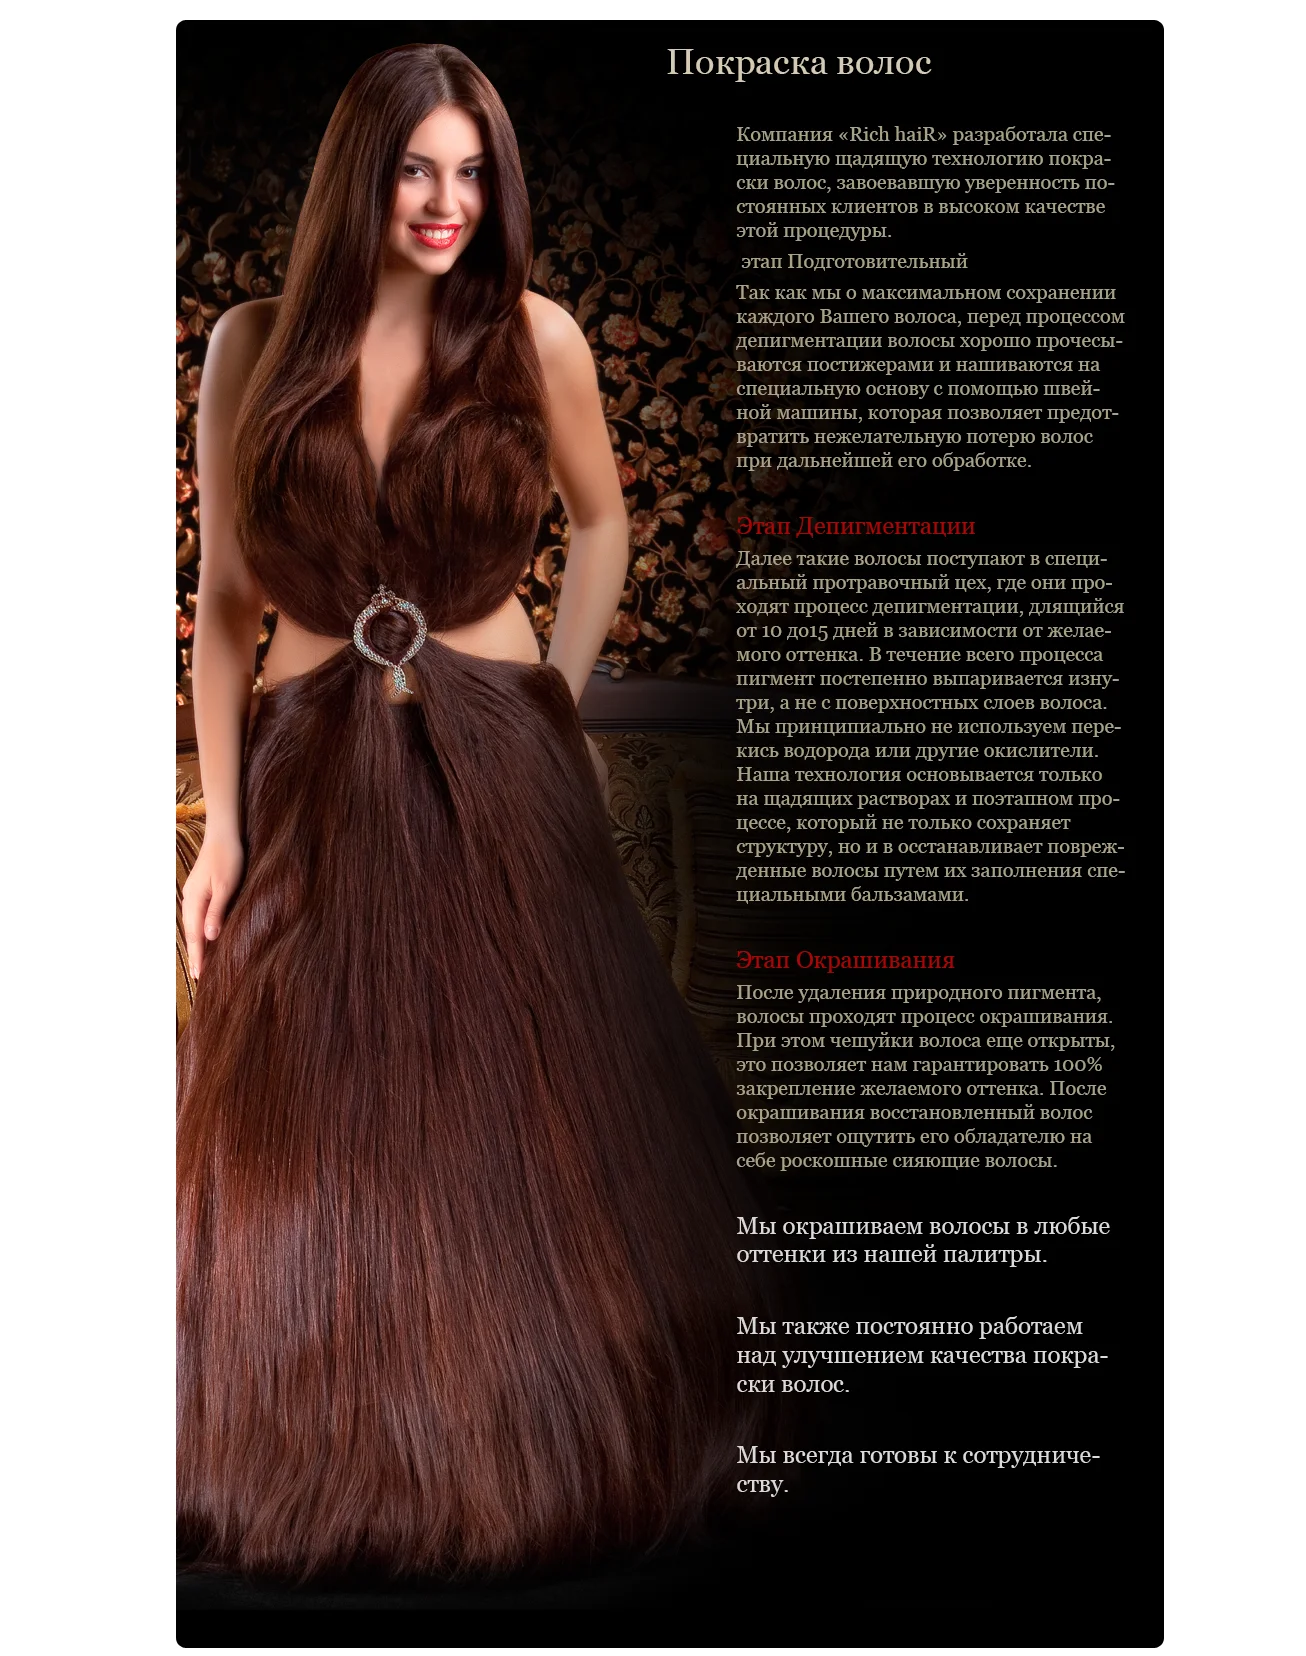 Создание интернет-магазина волос «Rich&nbsp;Hair» - Услуги (2)